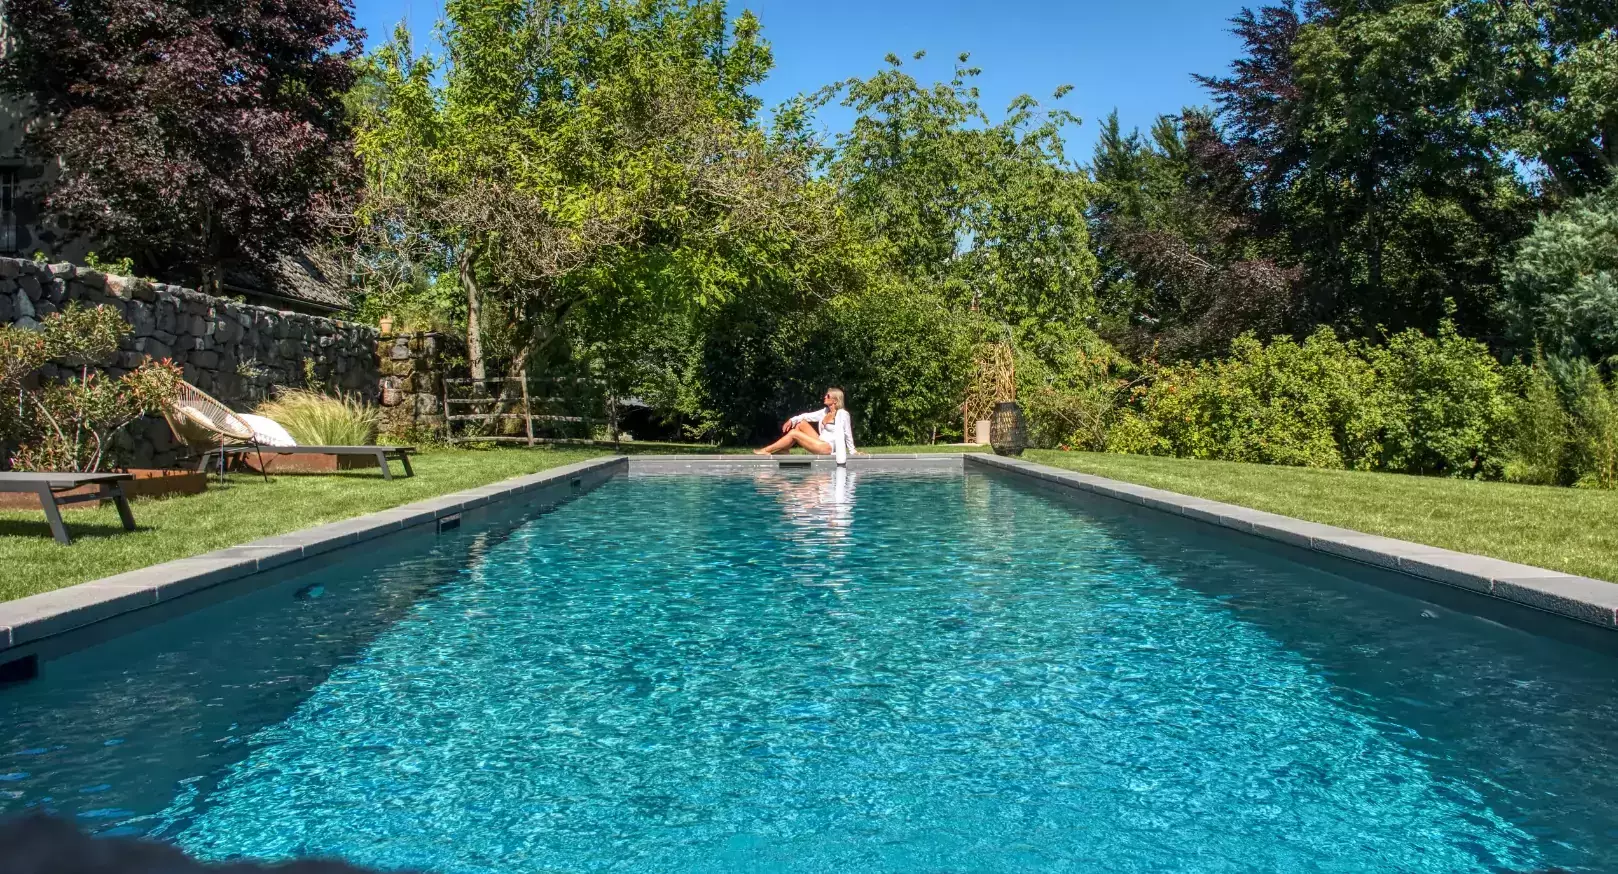 Construction d'une voie d'eau pour la natation dans le jardin d'une propriété, nichée dans un charmant village français